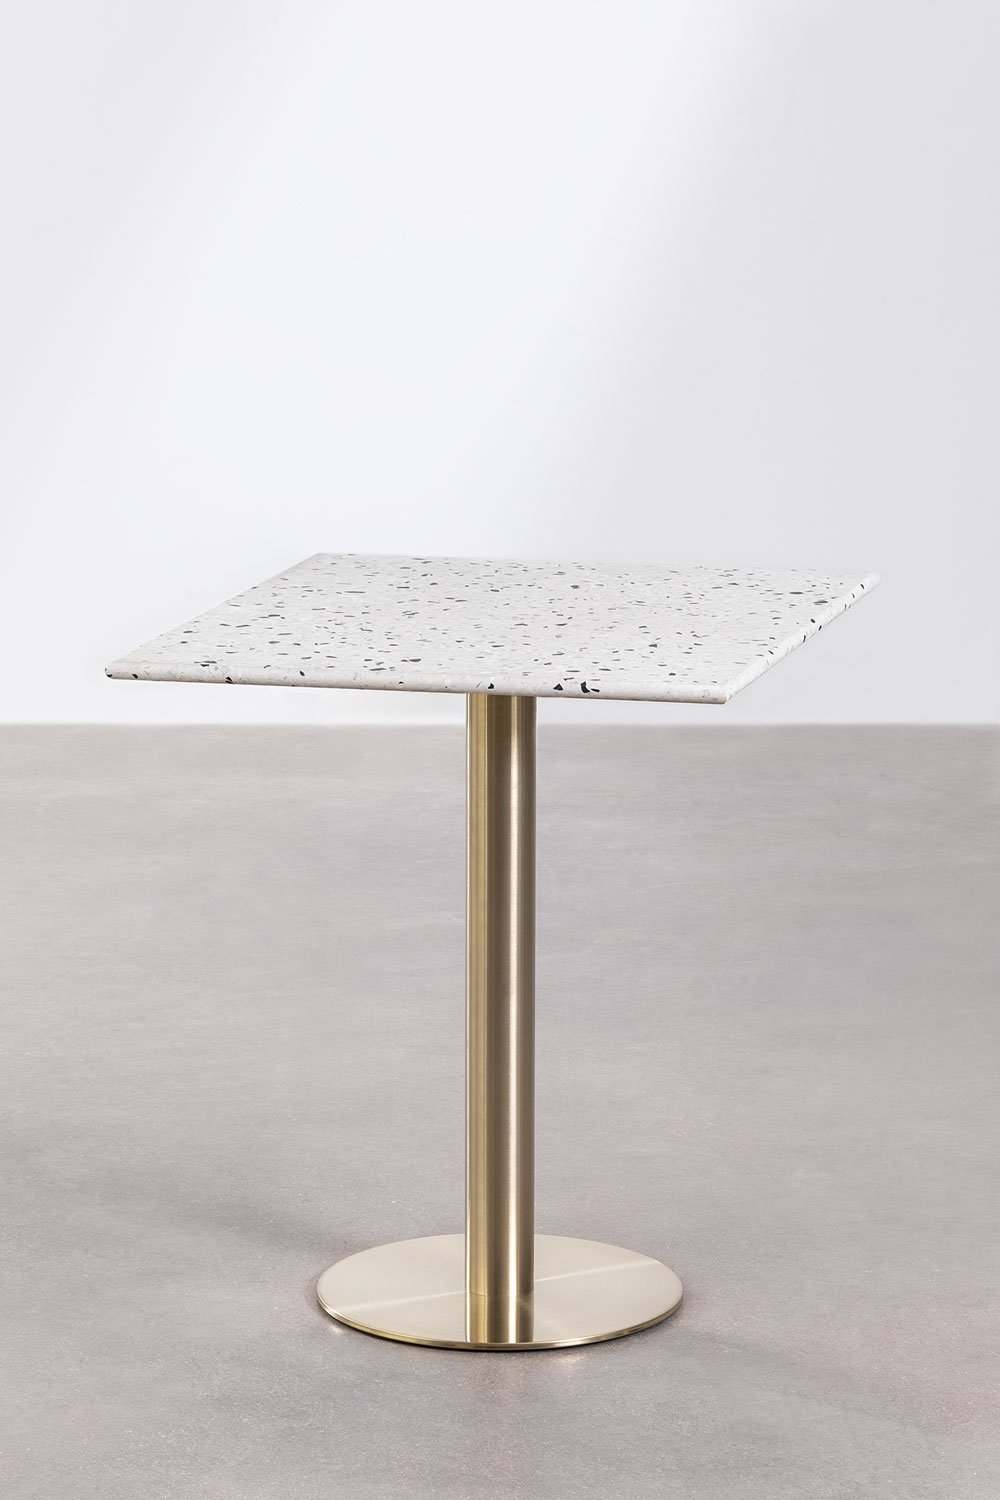 Kwadratowy stół barowy z lastryko (60x60 cm) Malibu, obrazek w galerii 1